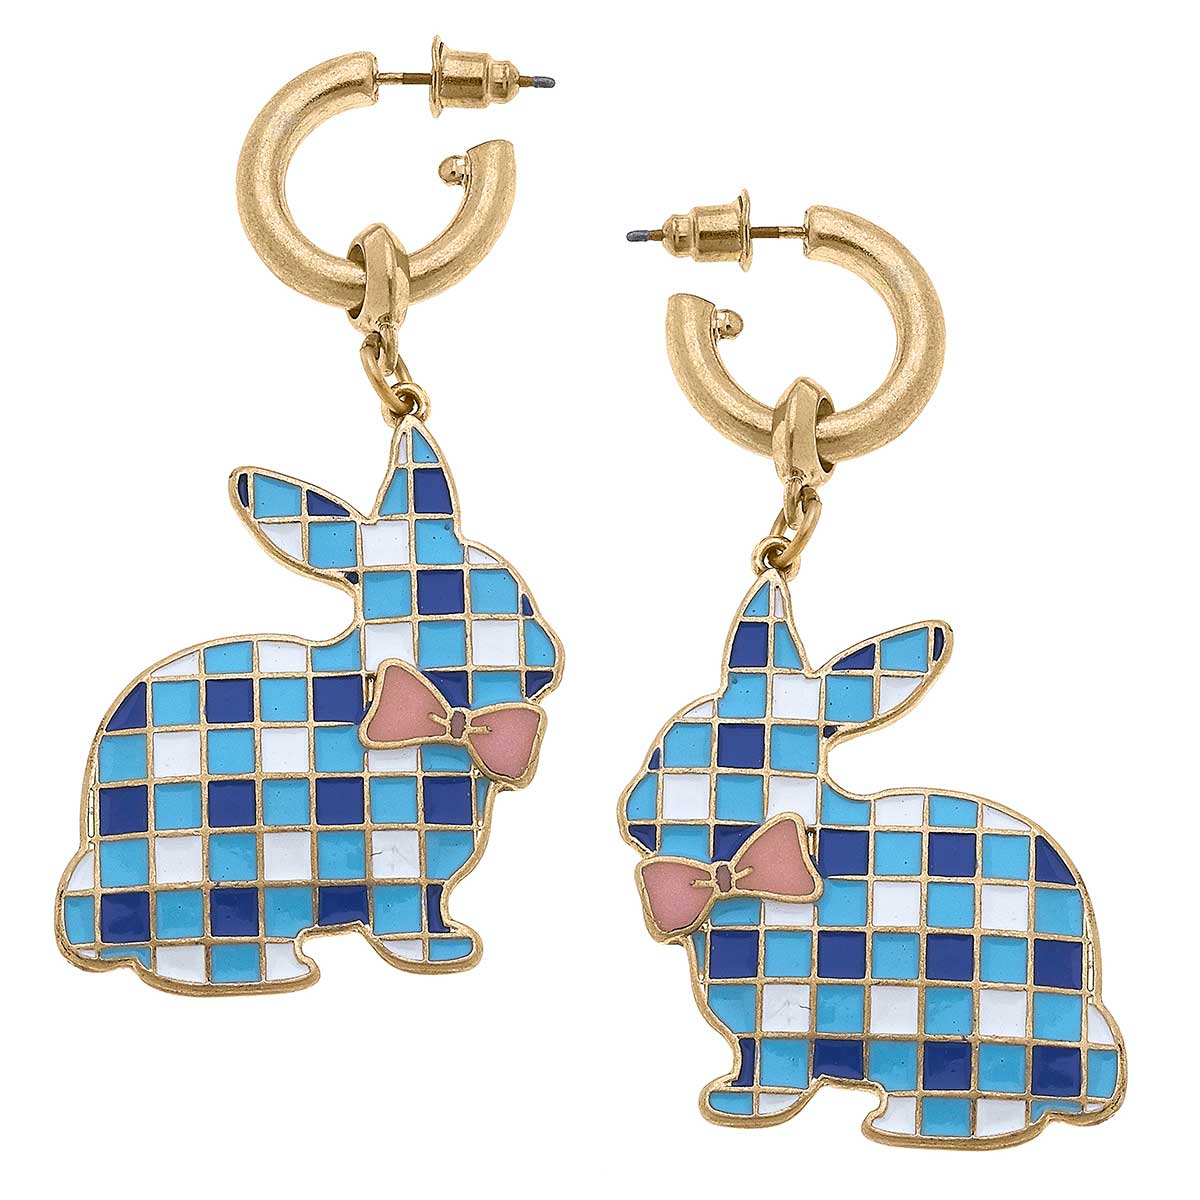 Stella Enamel Gingham Bunny Earrings in Blue & White